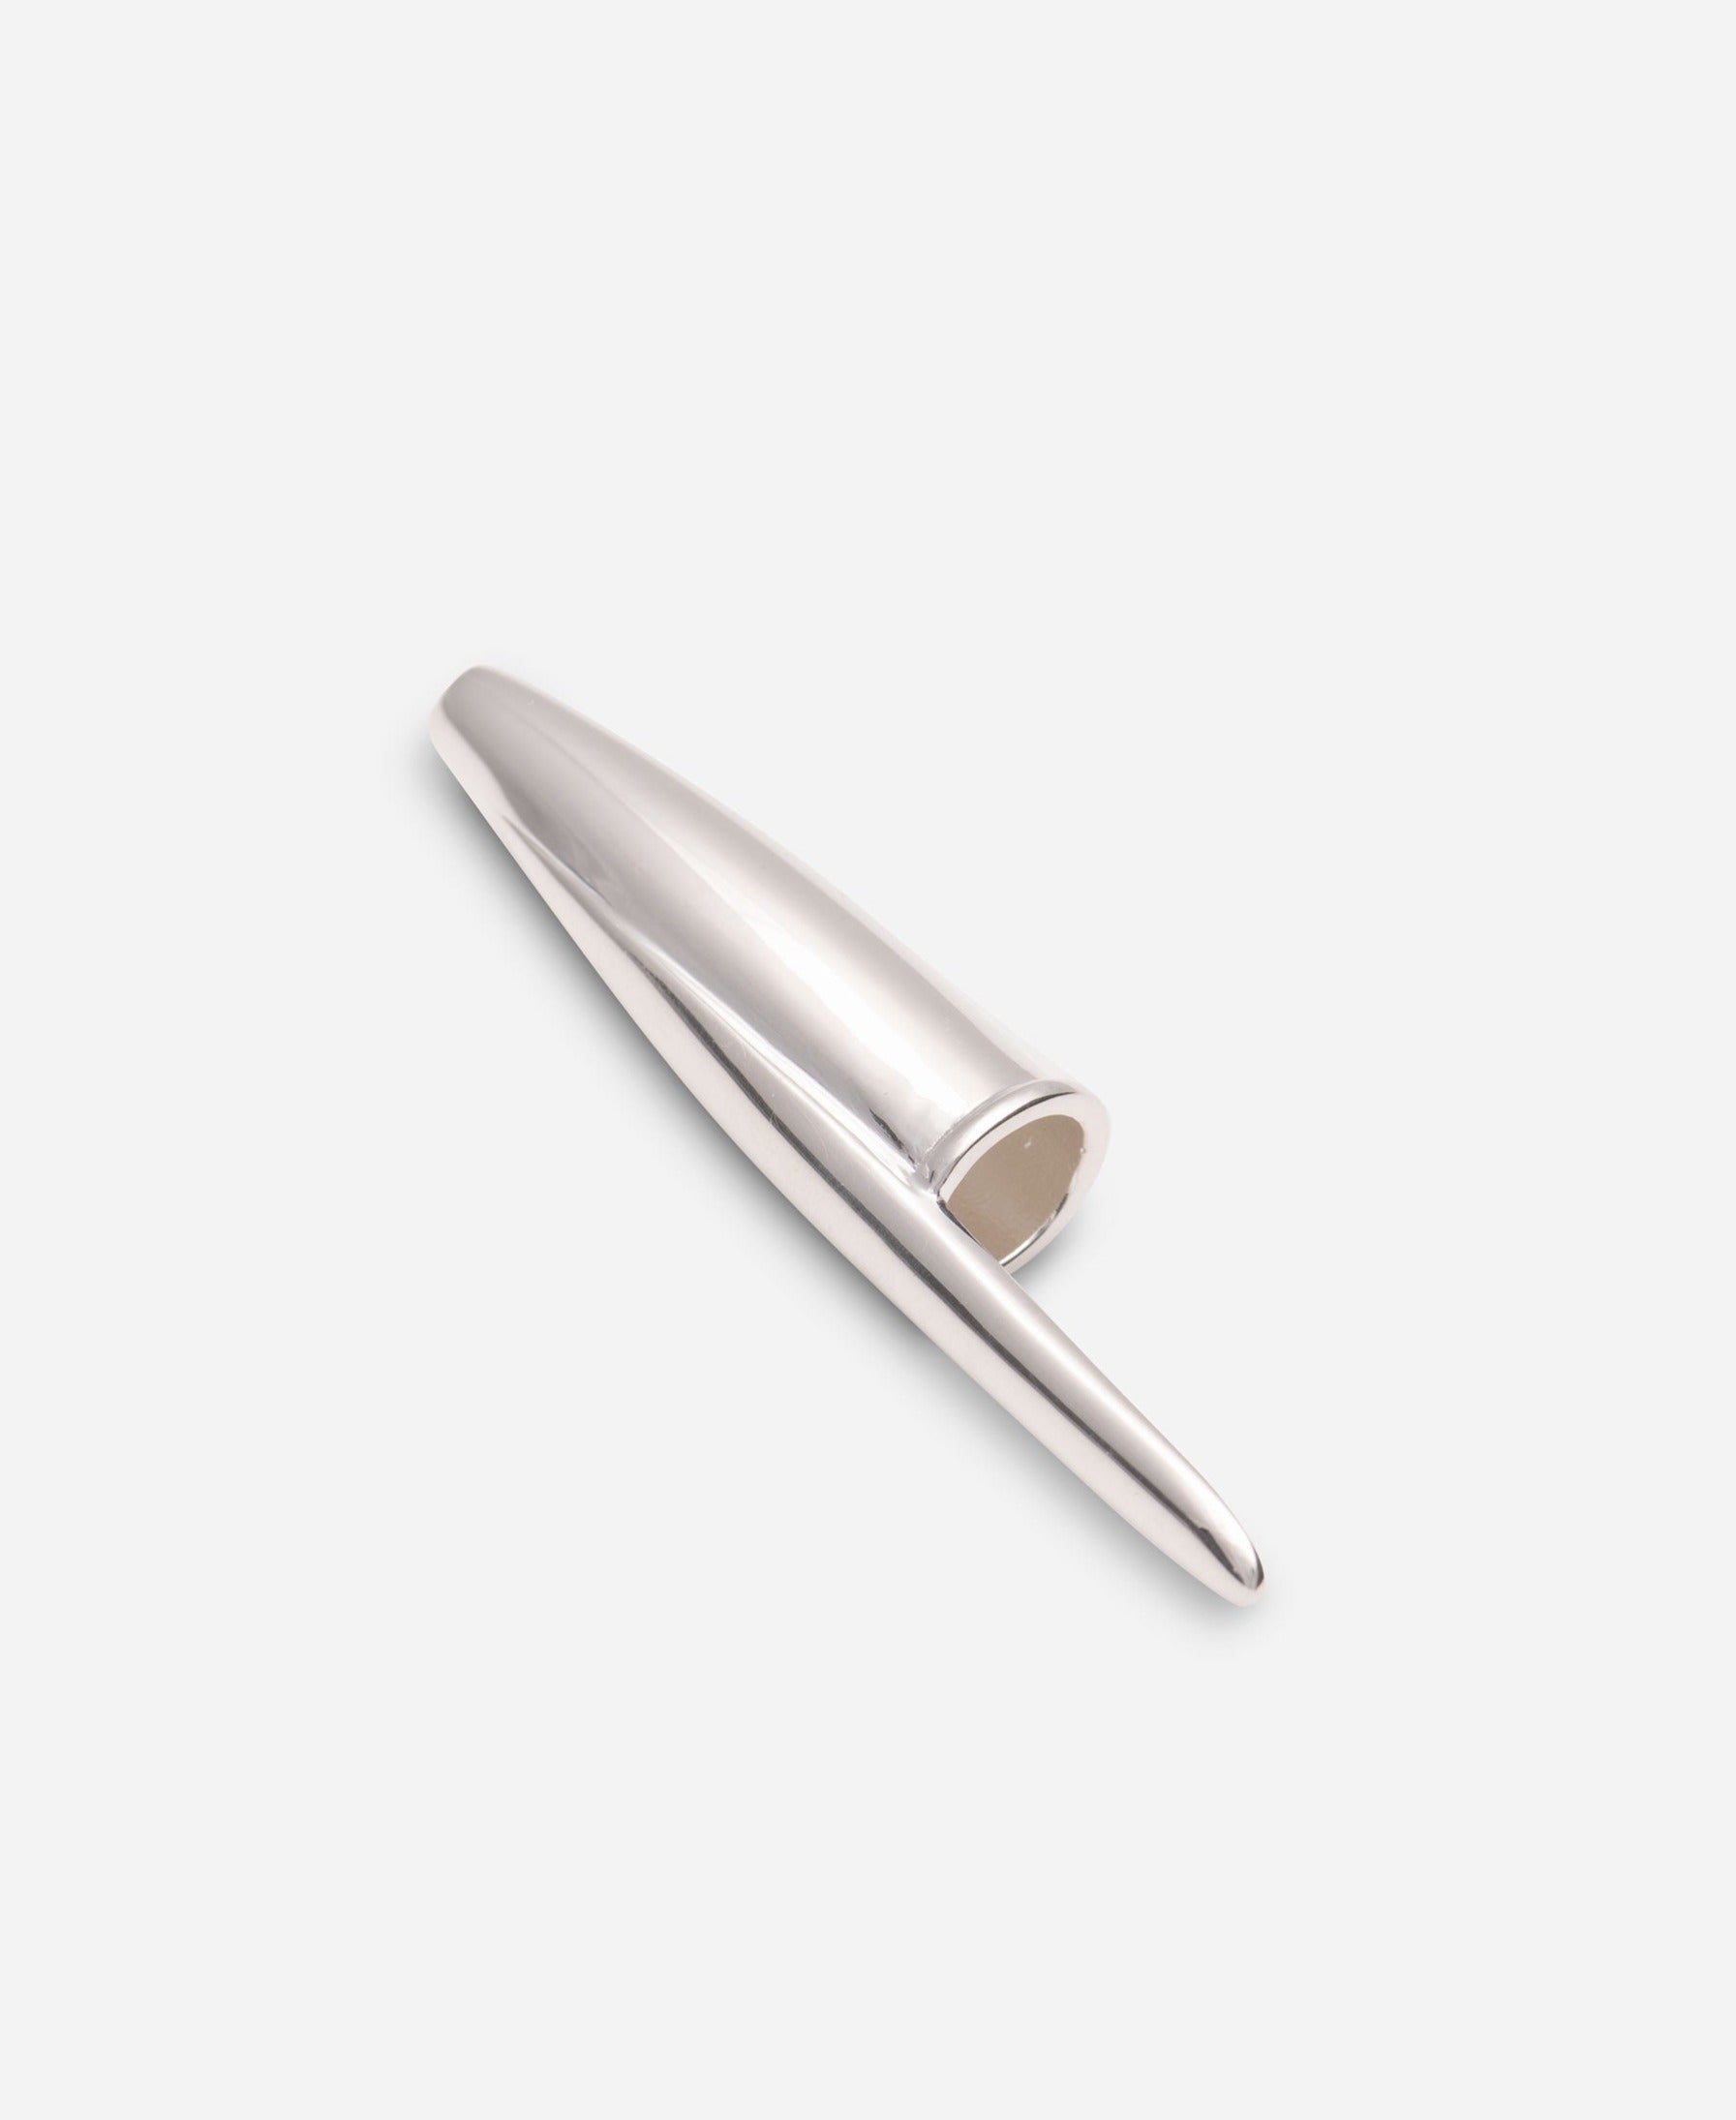 Sterling Silver Pen Cap